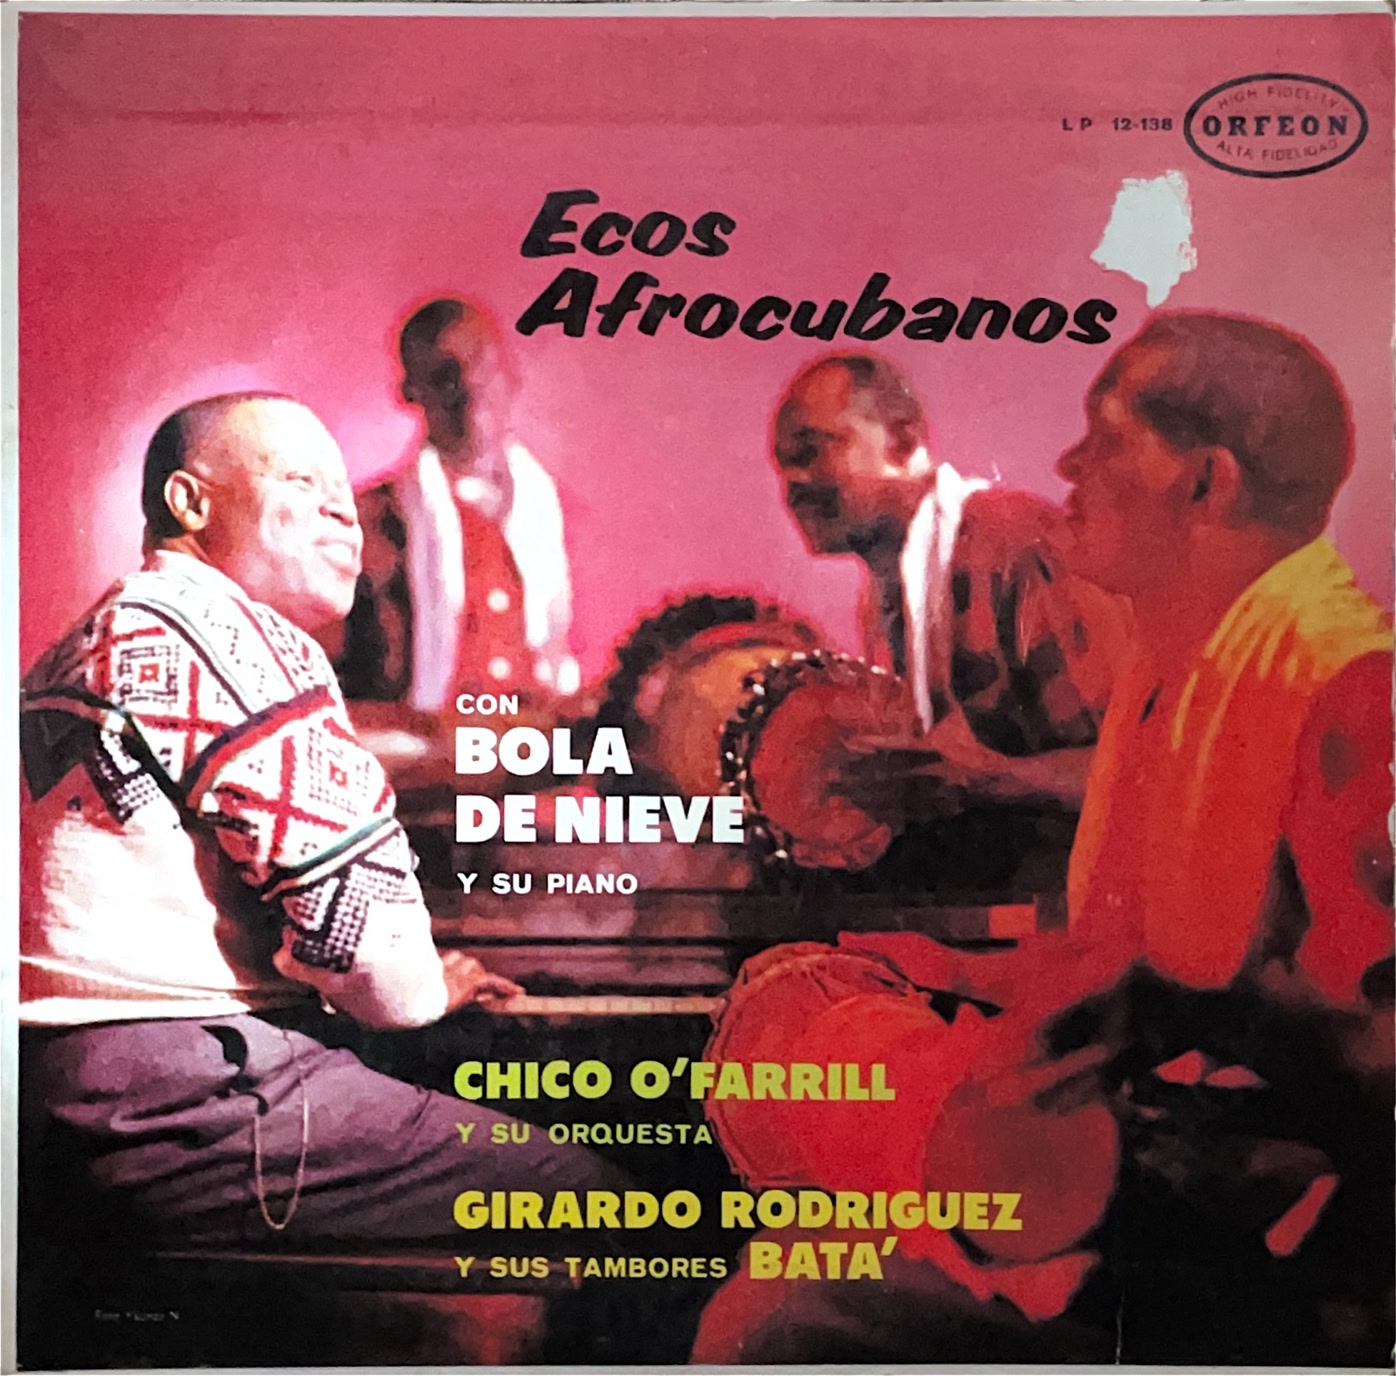 Bola De Nieve Y Su Piano, Chico O'Farrill Y Su Orquesta, Girardo Rodriguez Y Sus Tambores Batá – Ecos Afrocubanos